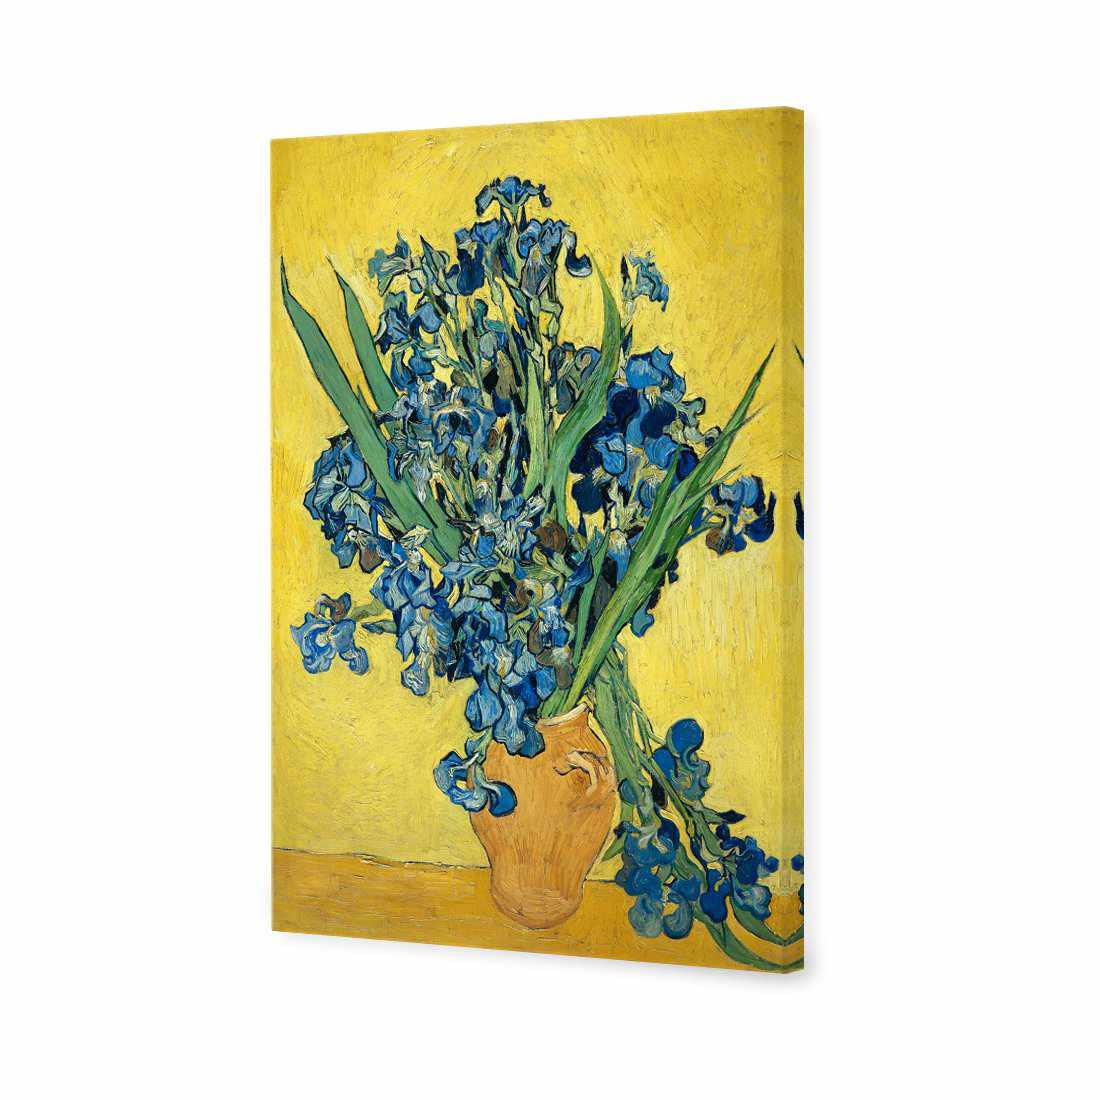 Vase Of Irises - Van Gogh Canvas Art-Canvas-Wall Art Designs-45x30cm-Canvas - No Frame-Wall Art Designs